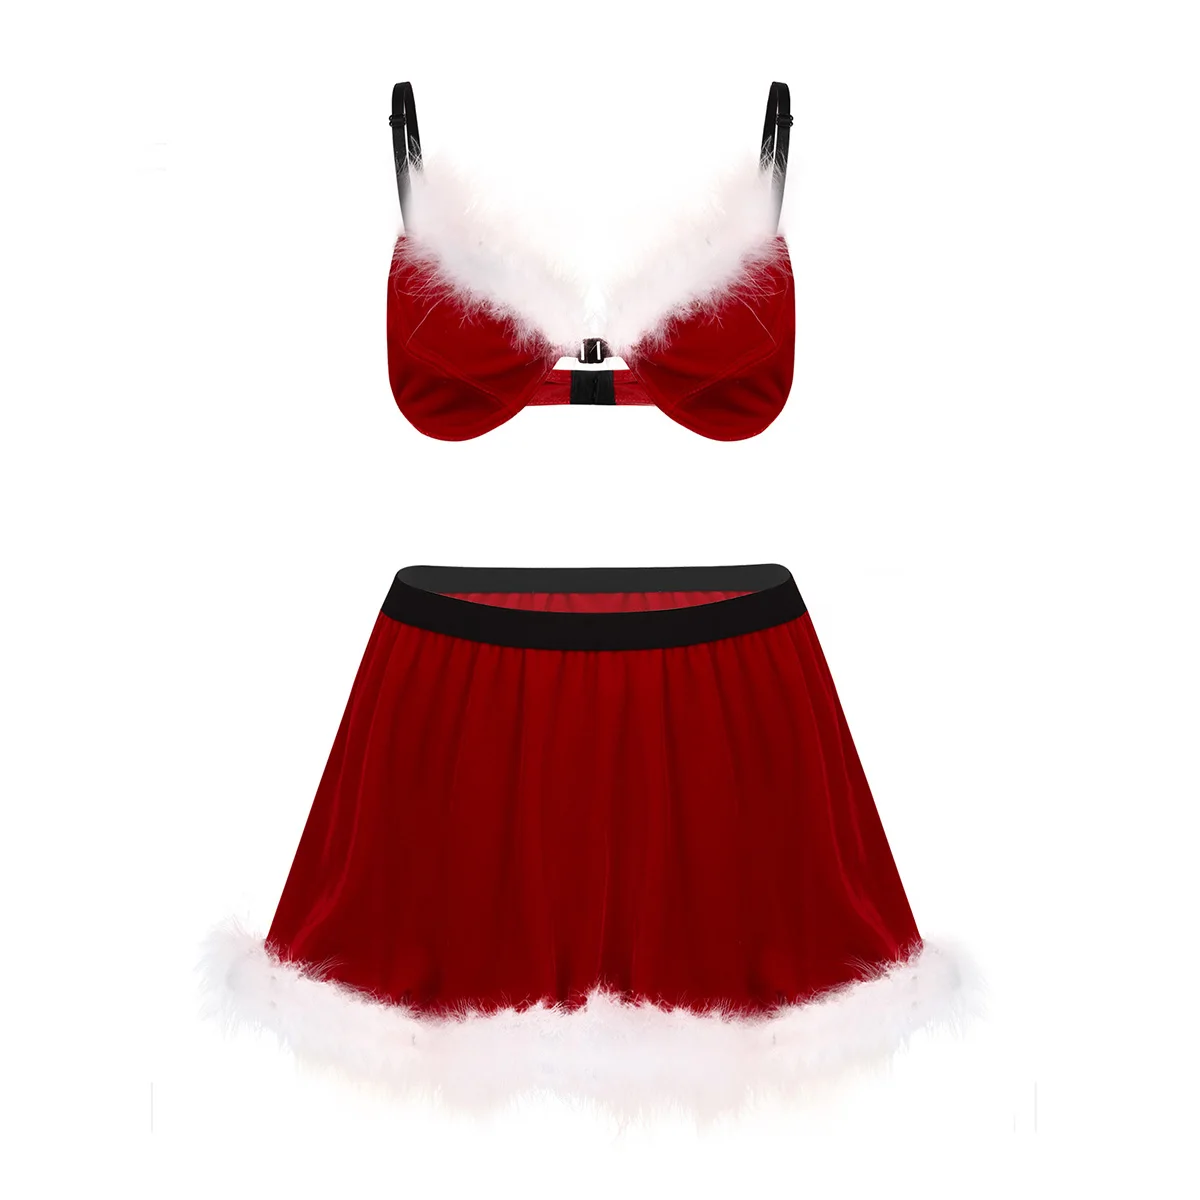 Сексуальные Рождественские костюмы для мужчин, красное бархатное нижнее белье с перьями для костюмированной вечеринки, Эротическое нижнее белье